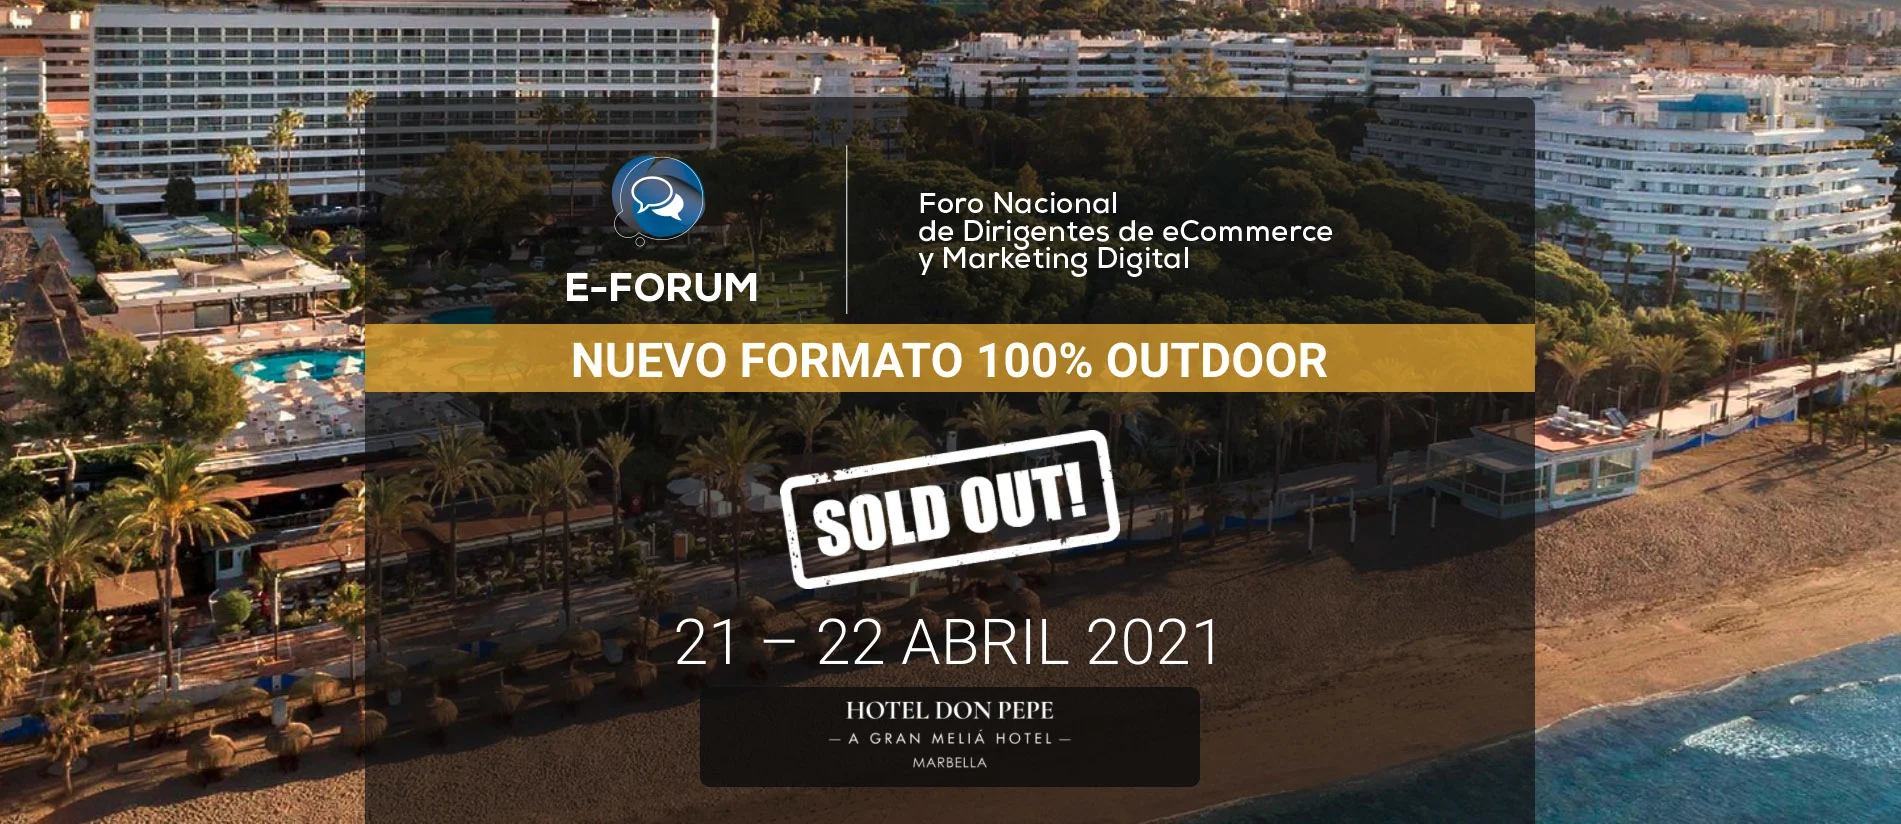 E-Forum Marbella